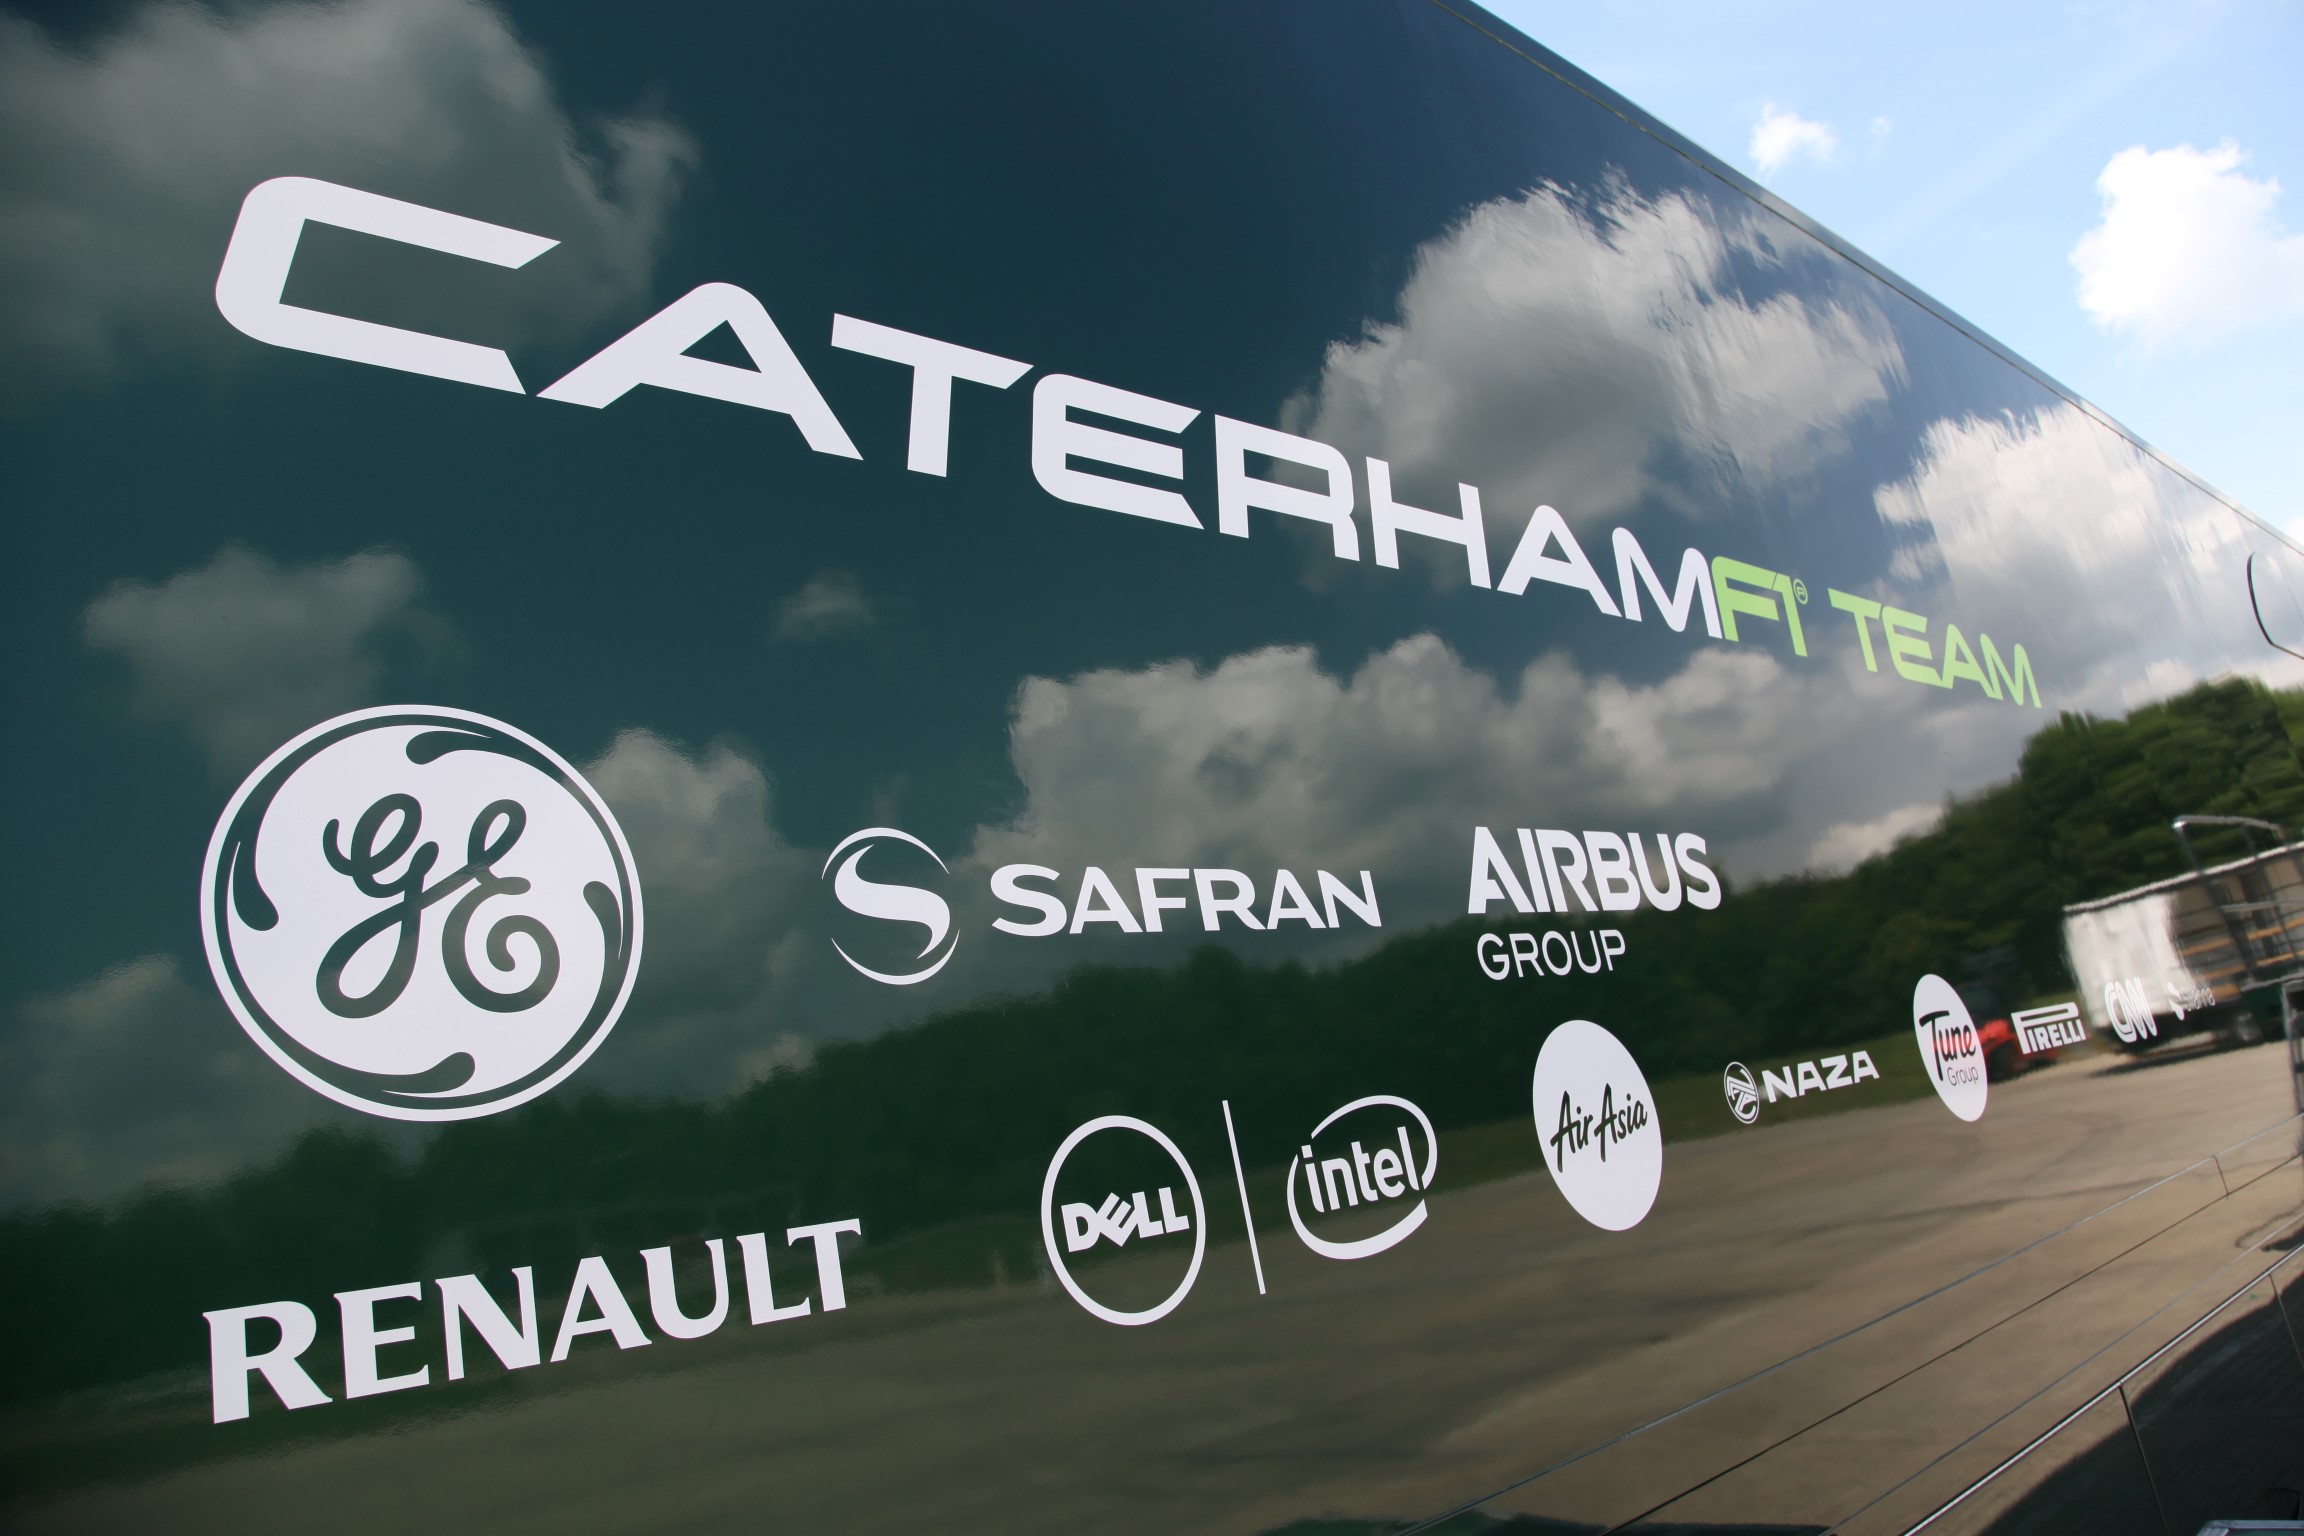 Caterham F1